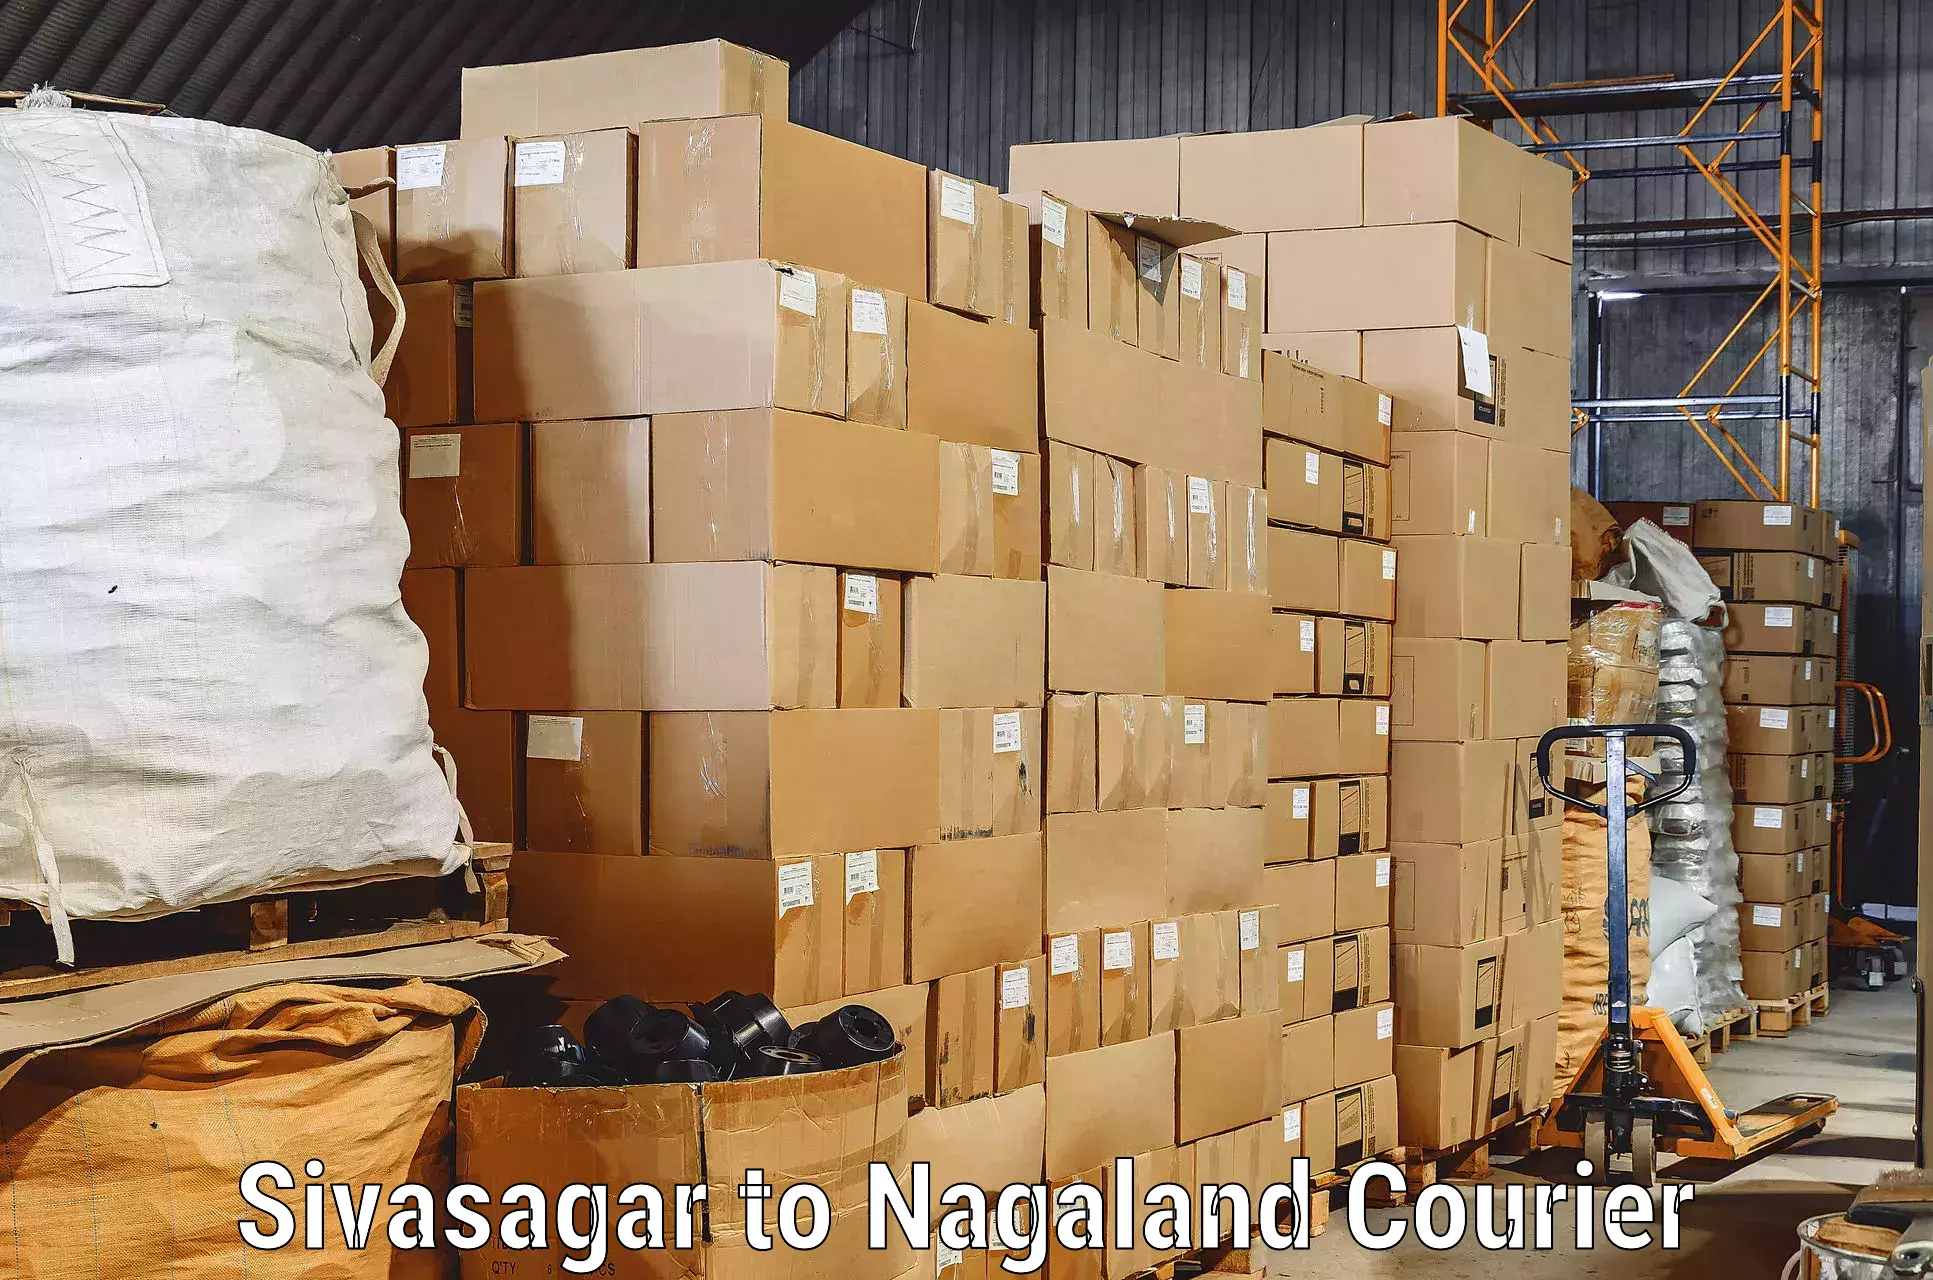 Furniture transport experts Sivasagar to Nagaland